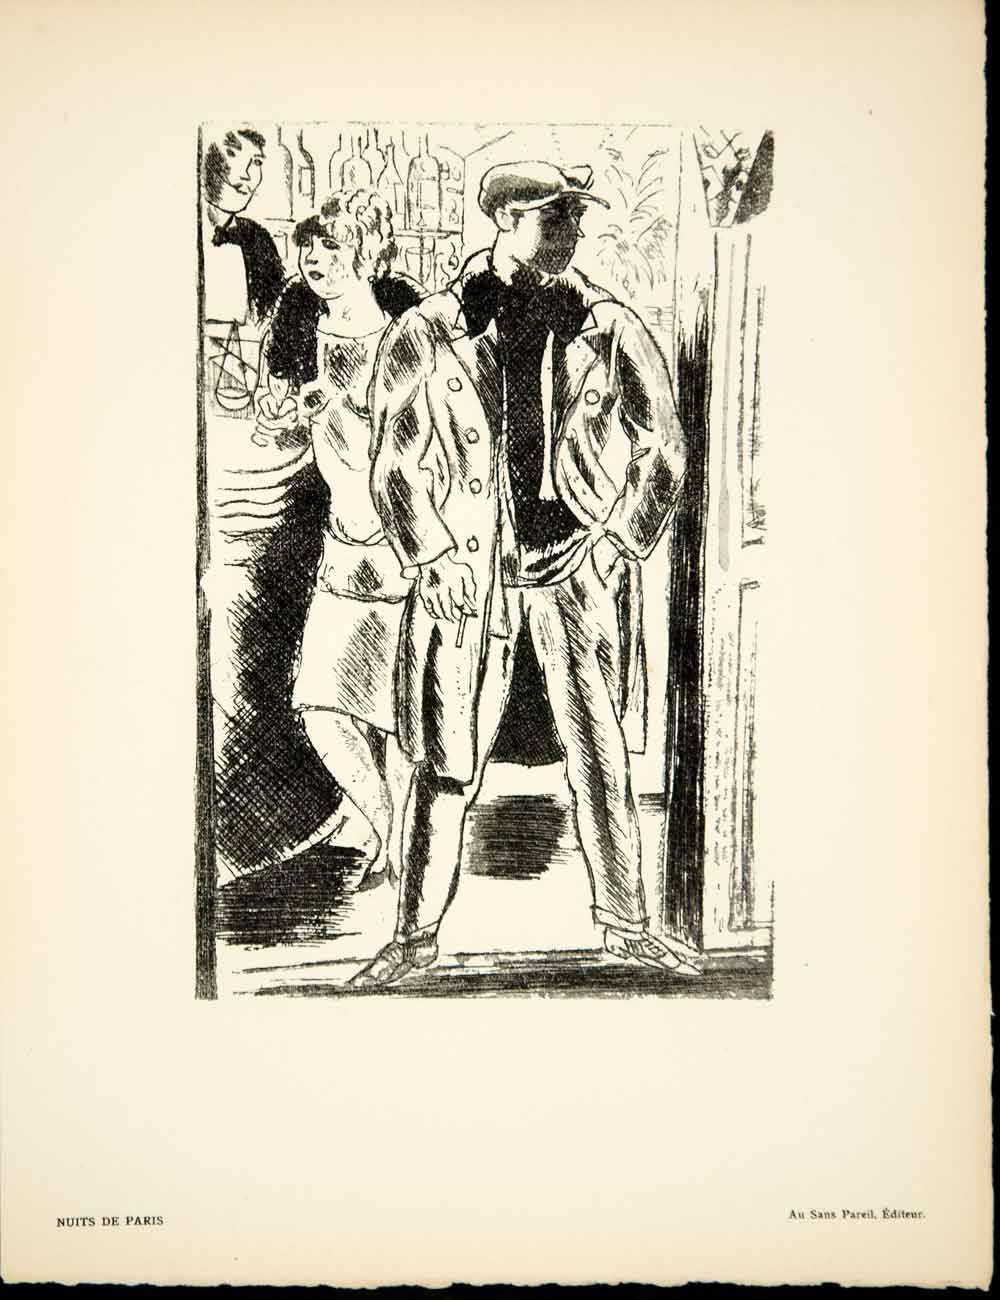 1929 Print Andre Dignimont Nuits de Paris Francis Carco Book Illustration ADLD1